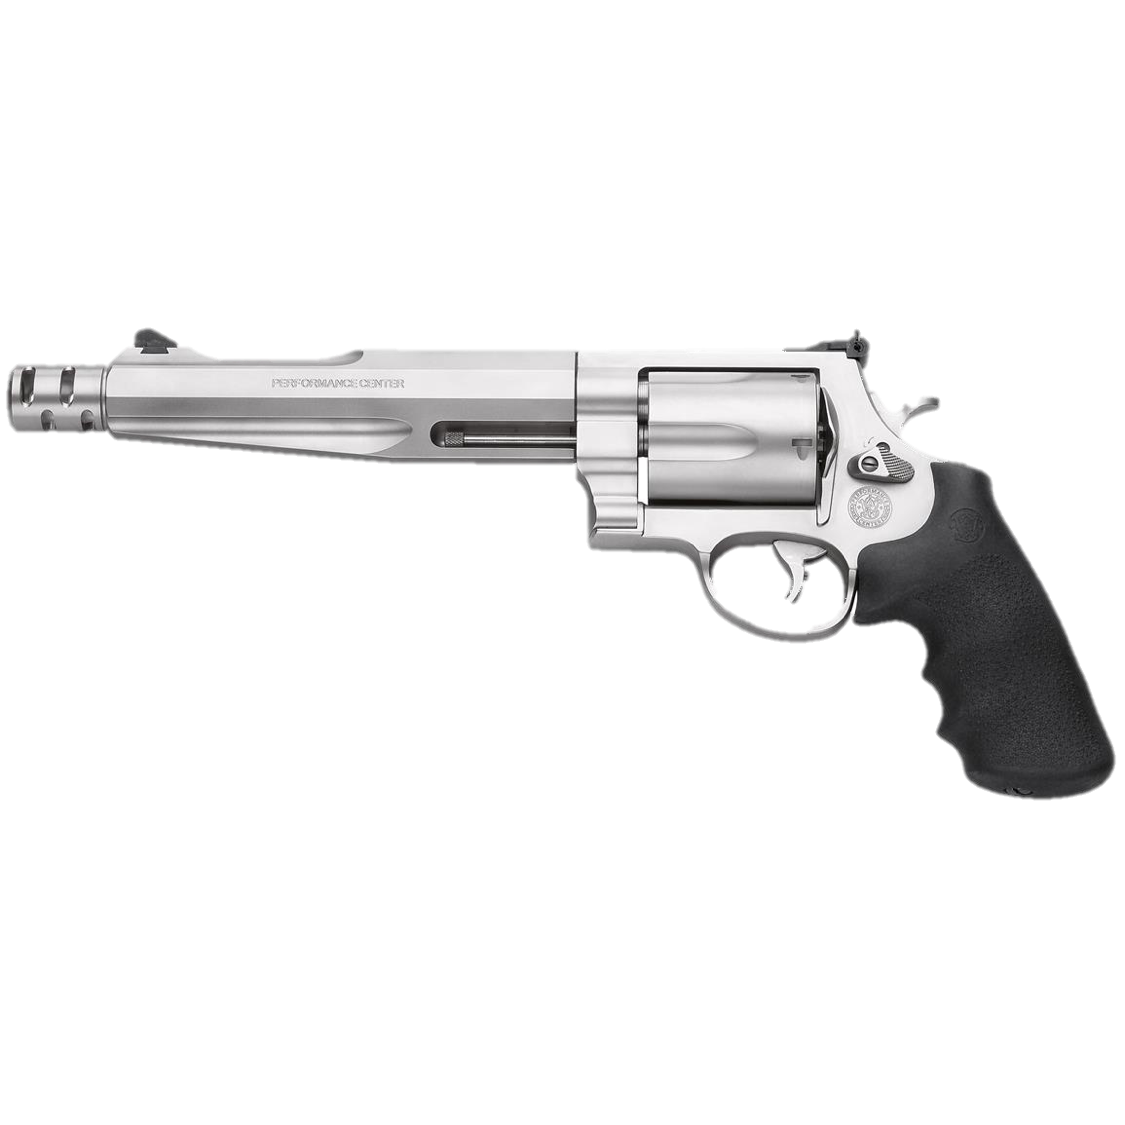 Smith & Wesson Model 500 - Machine Gun America